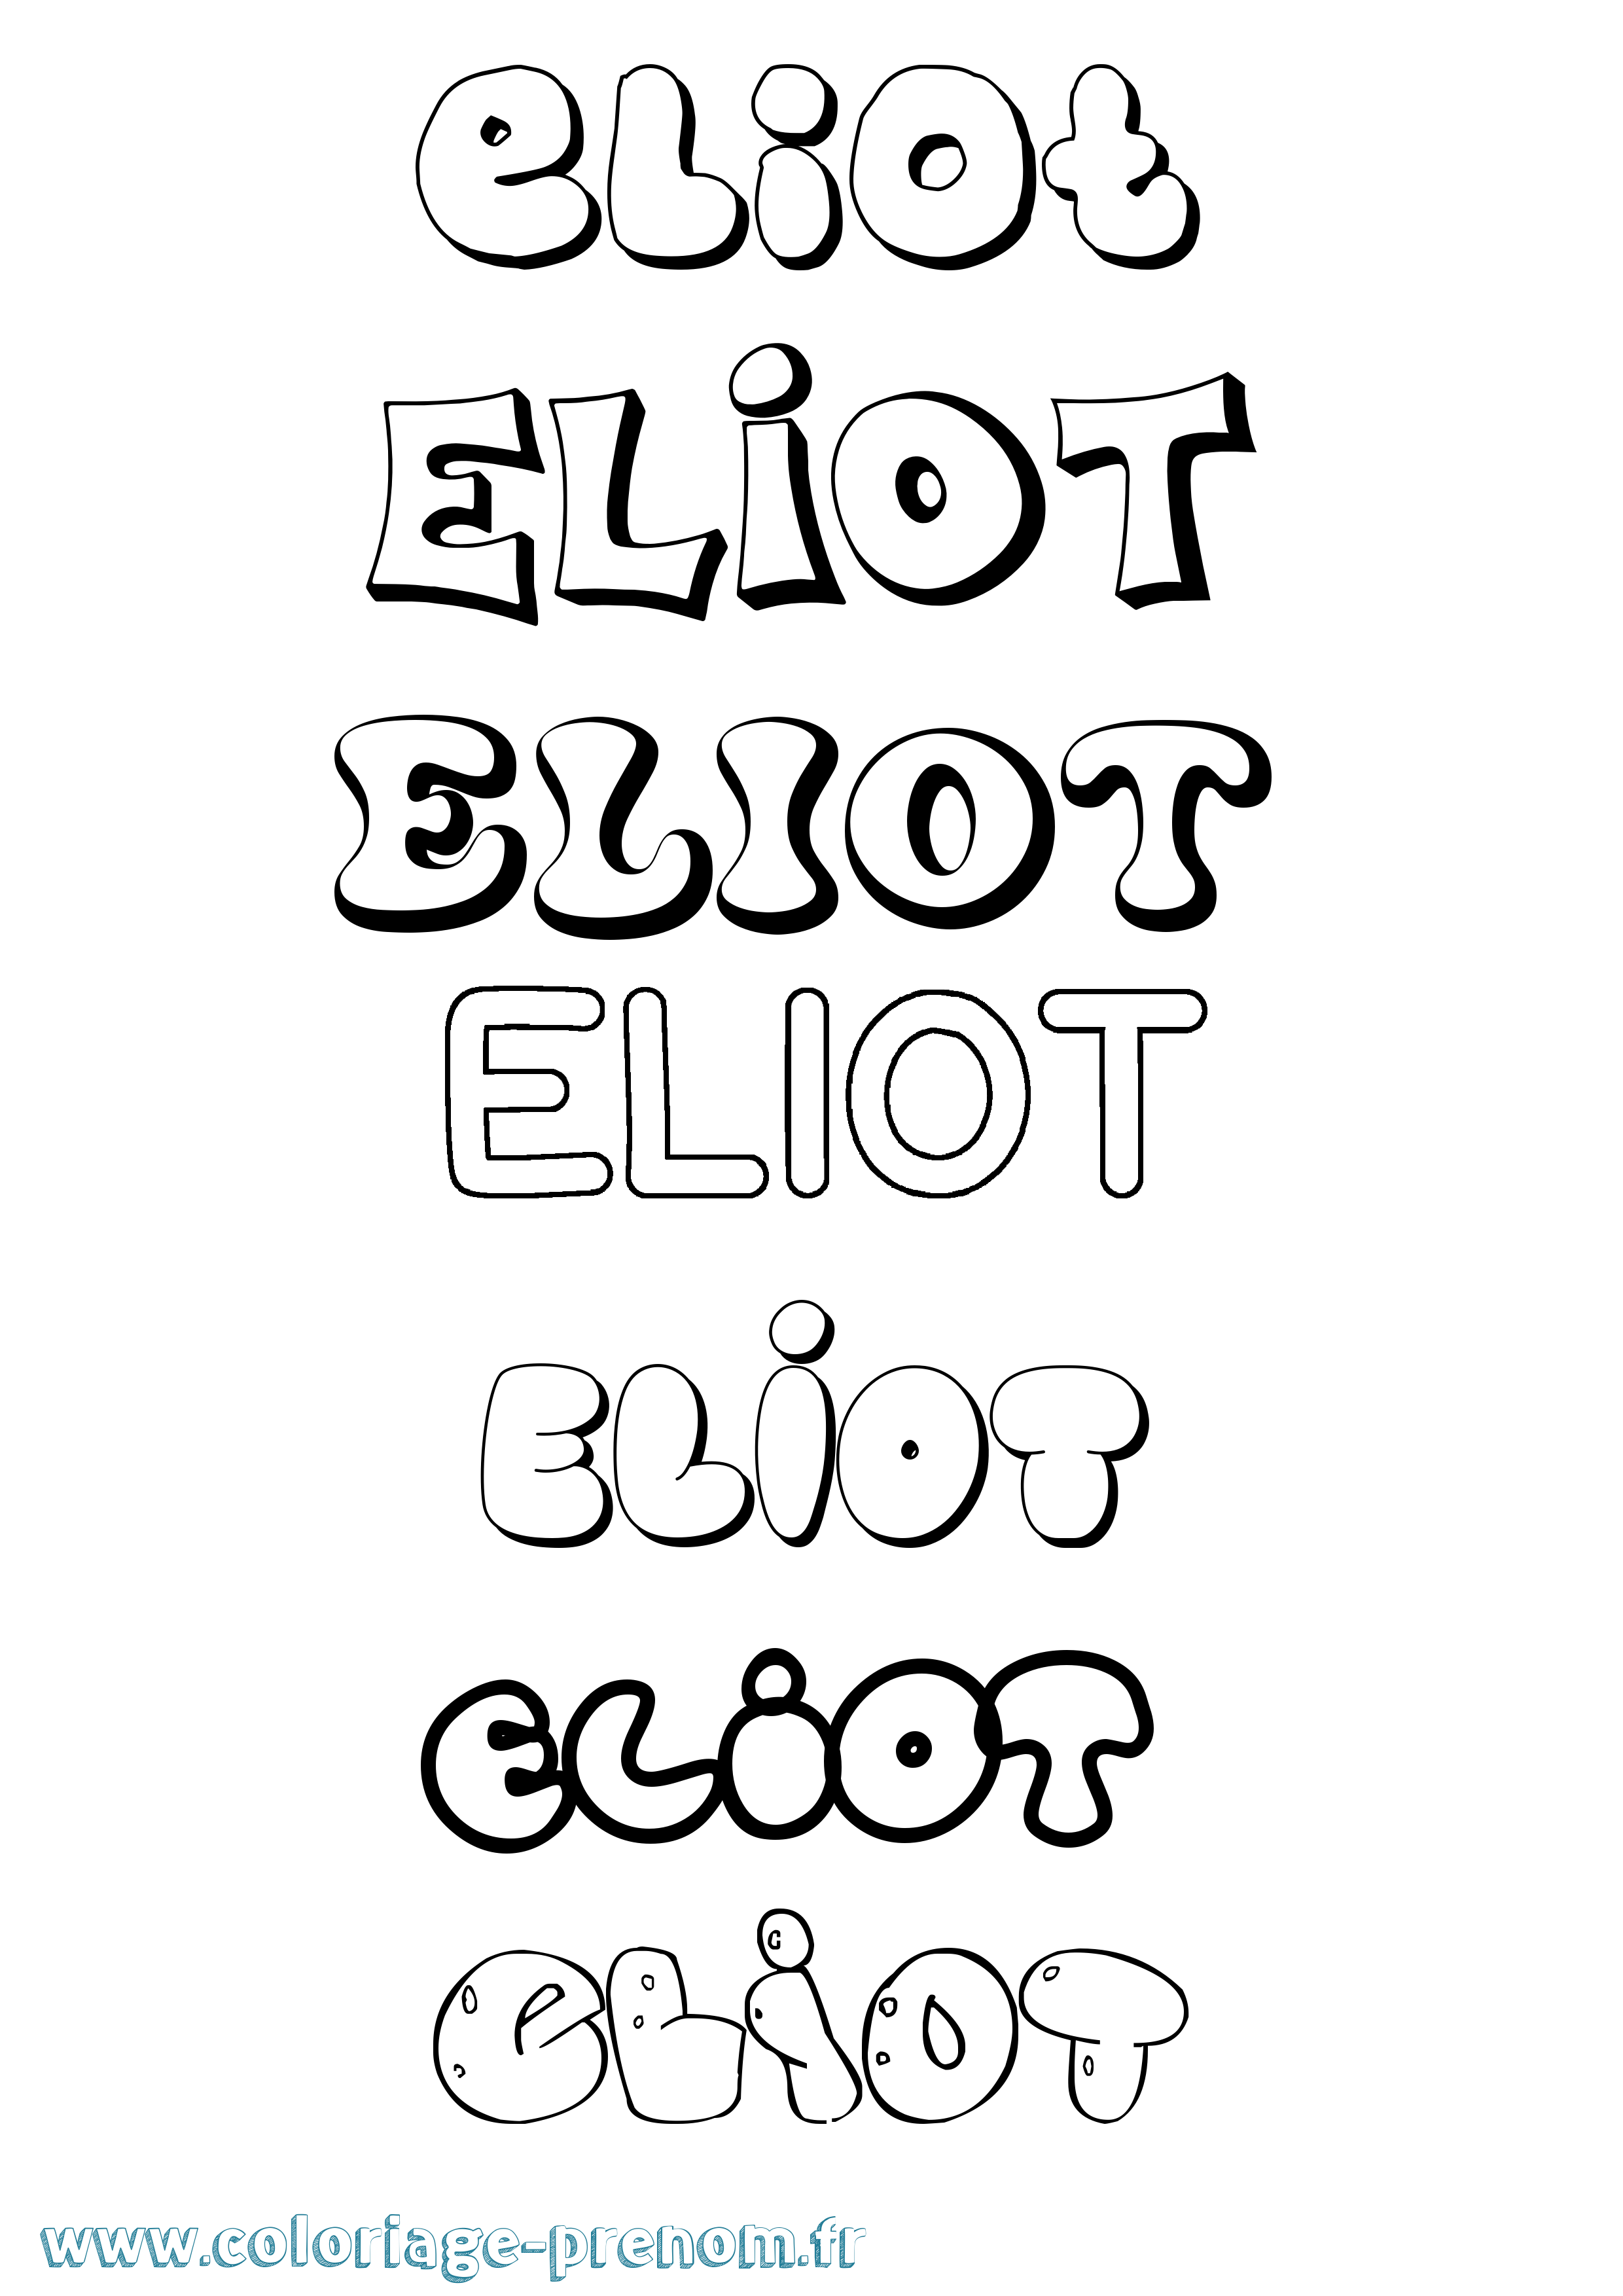 Coloriage prénom Eliot Bubble